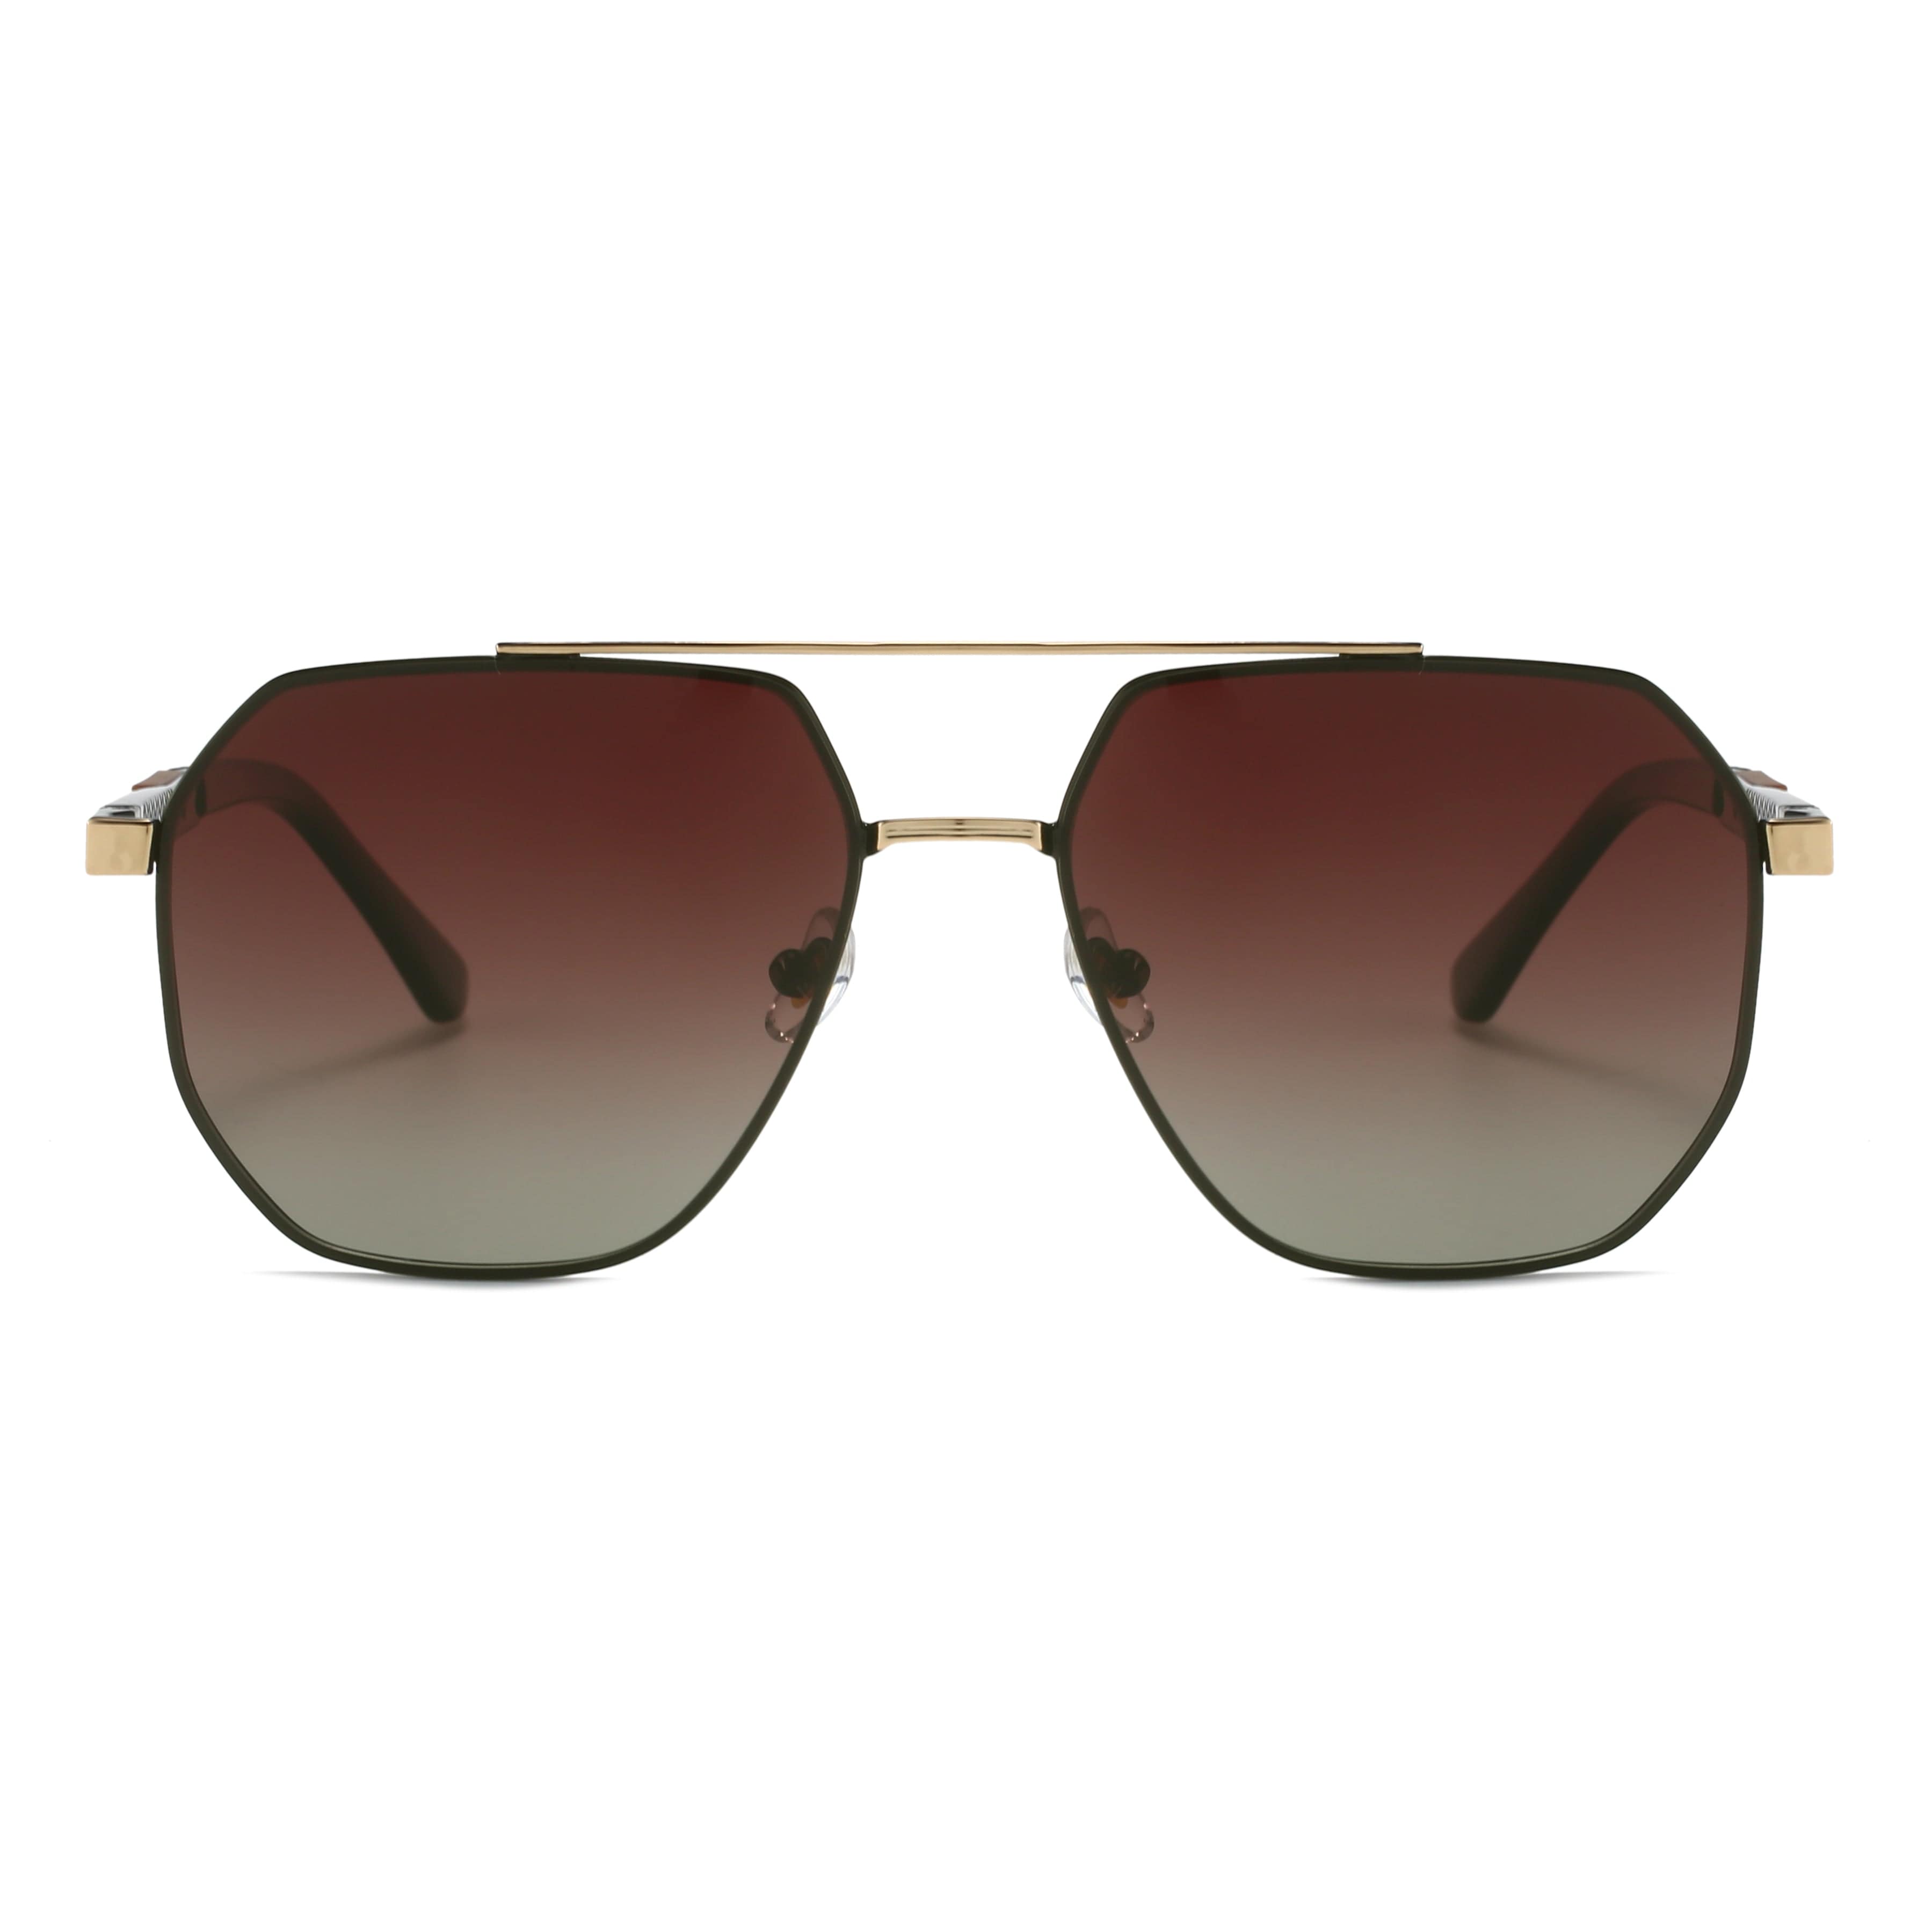 GIUSTIZIERI VECCHI Sunglasses Medium / Light Gold/Brown Golden Grove Uno